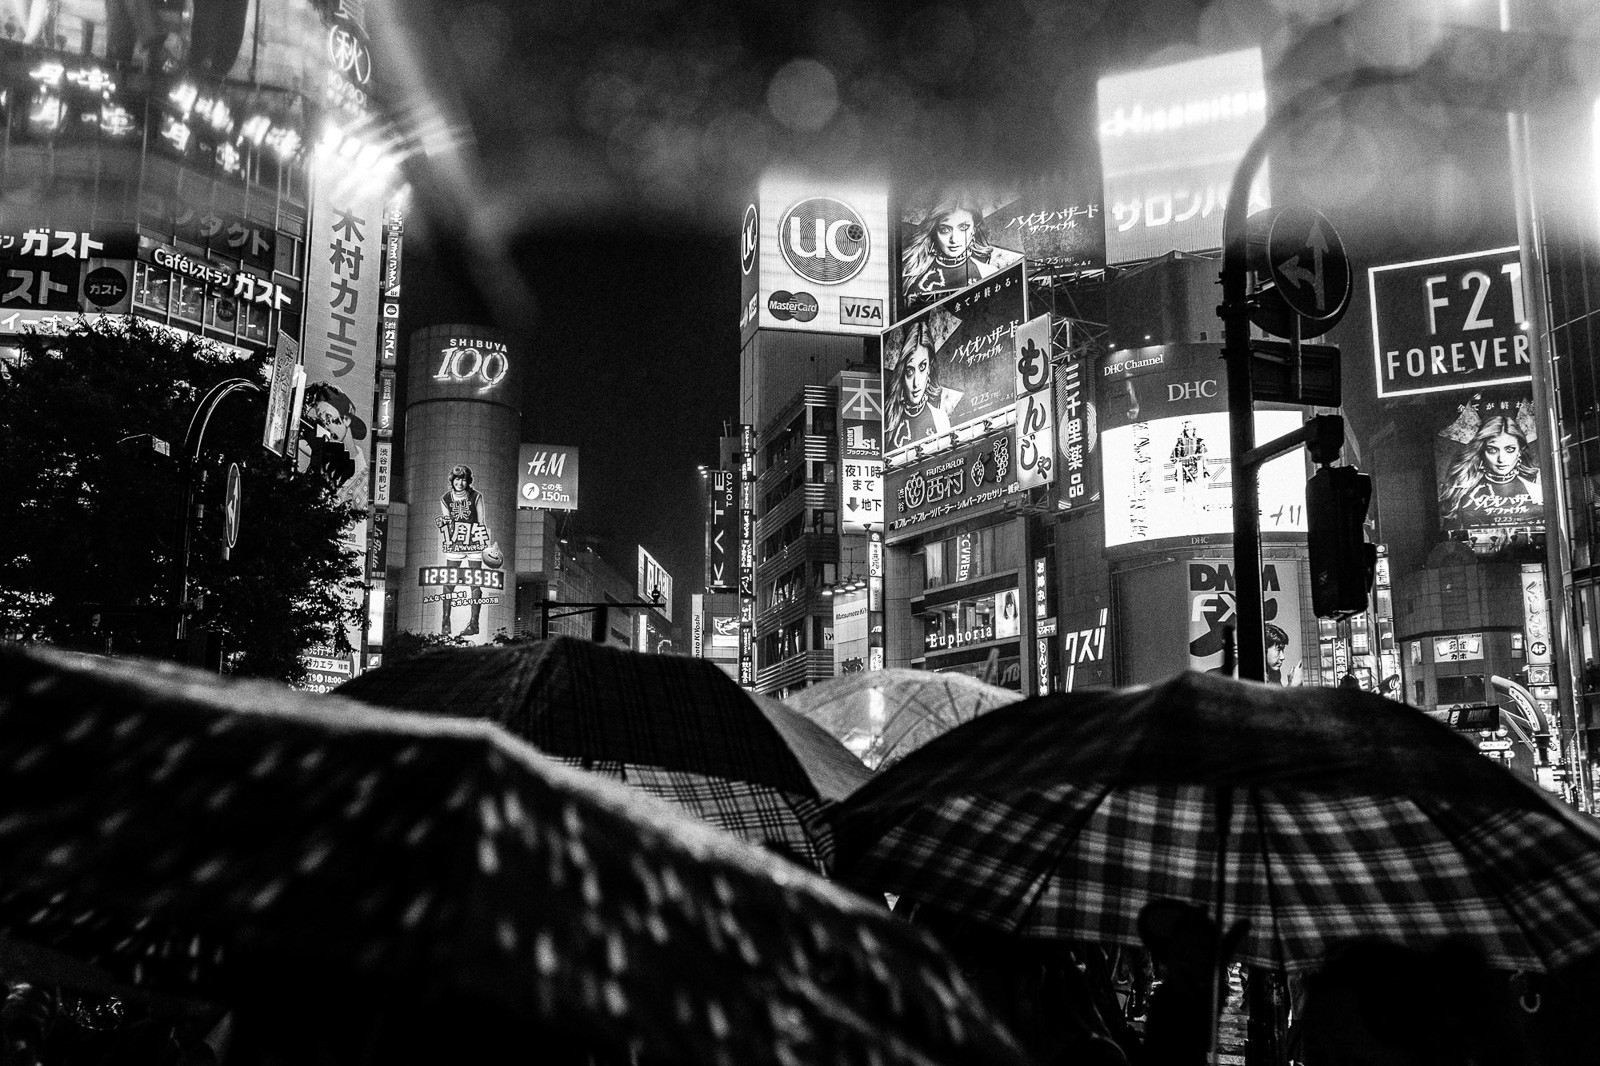 rainy mood with umbrellas at shibuya crossing tokyo